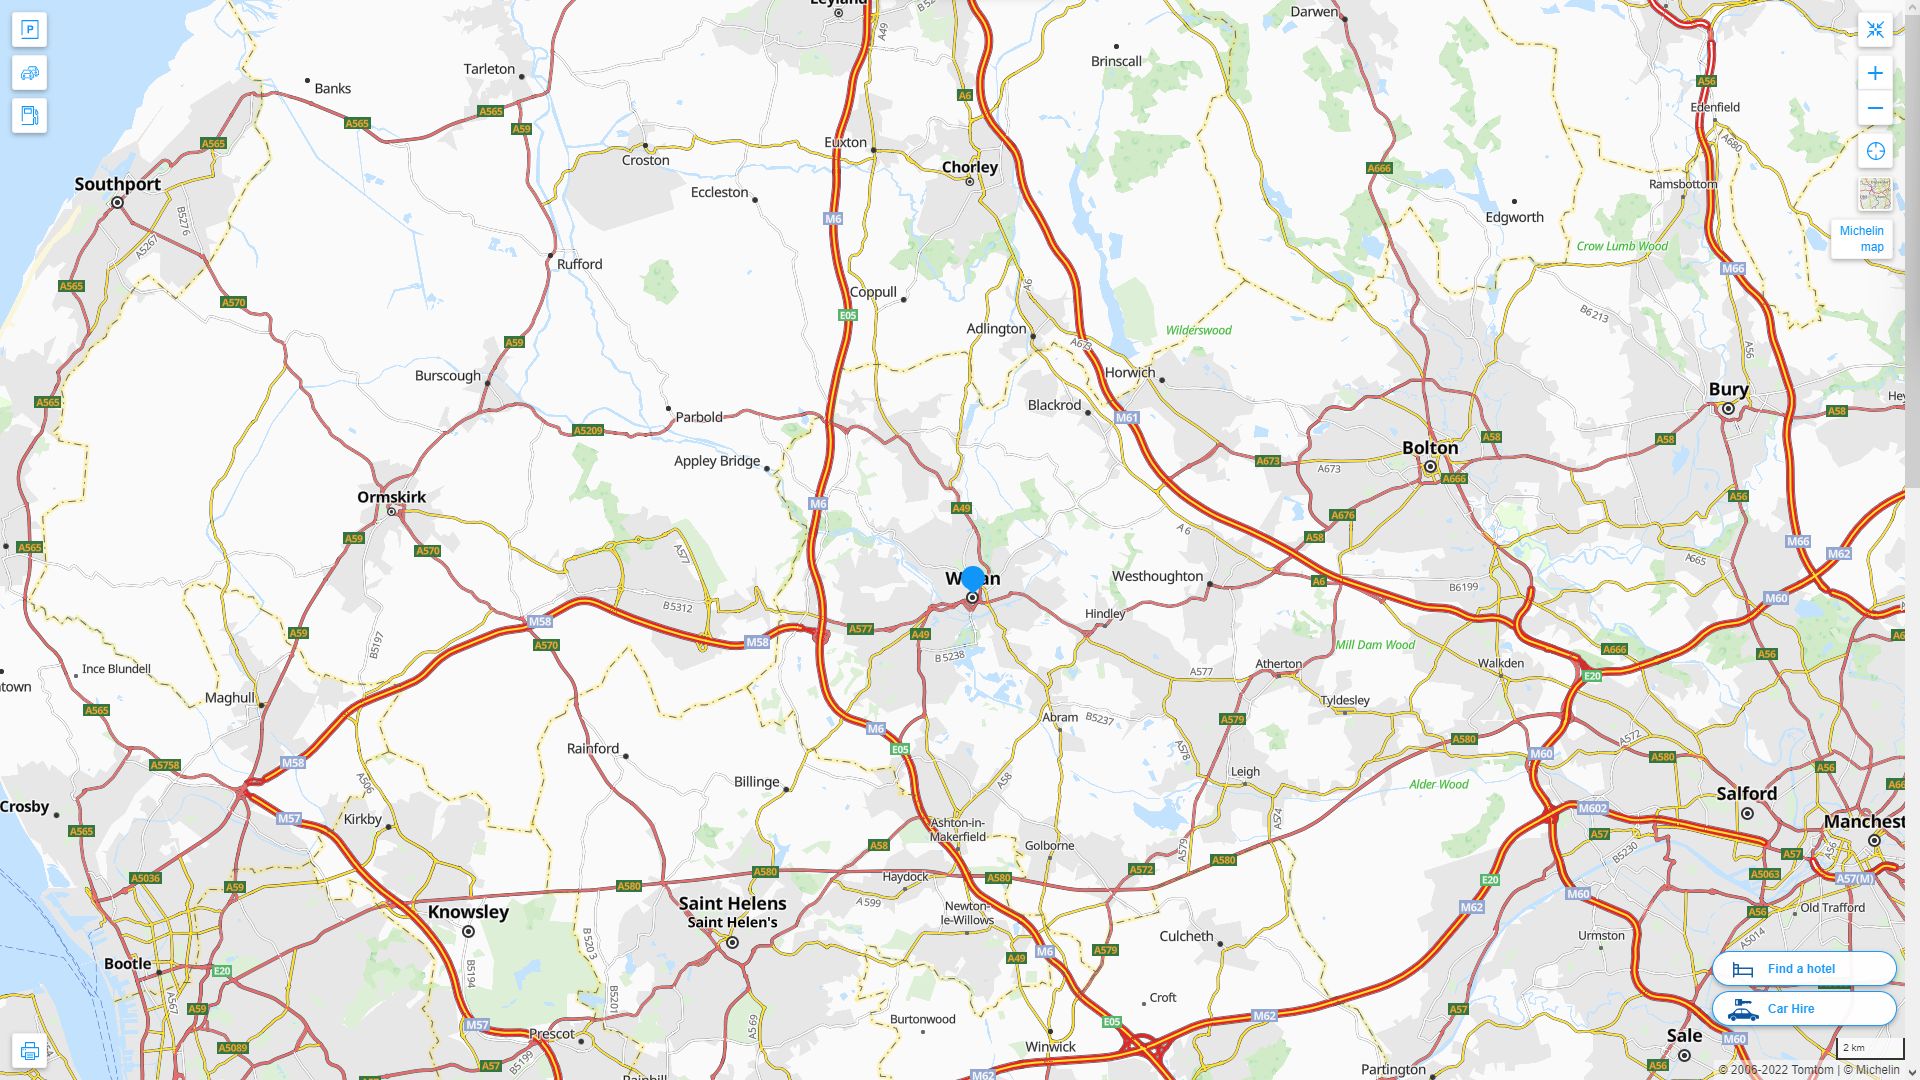 Wigan Royaume Uni Autoroute et carte routiere